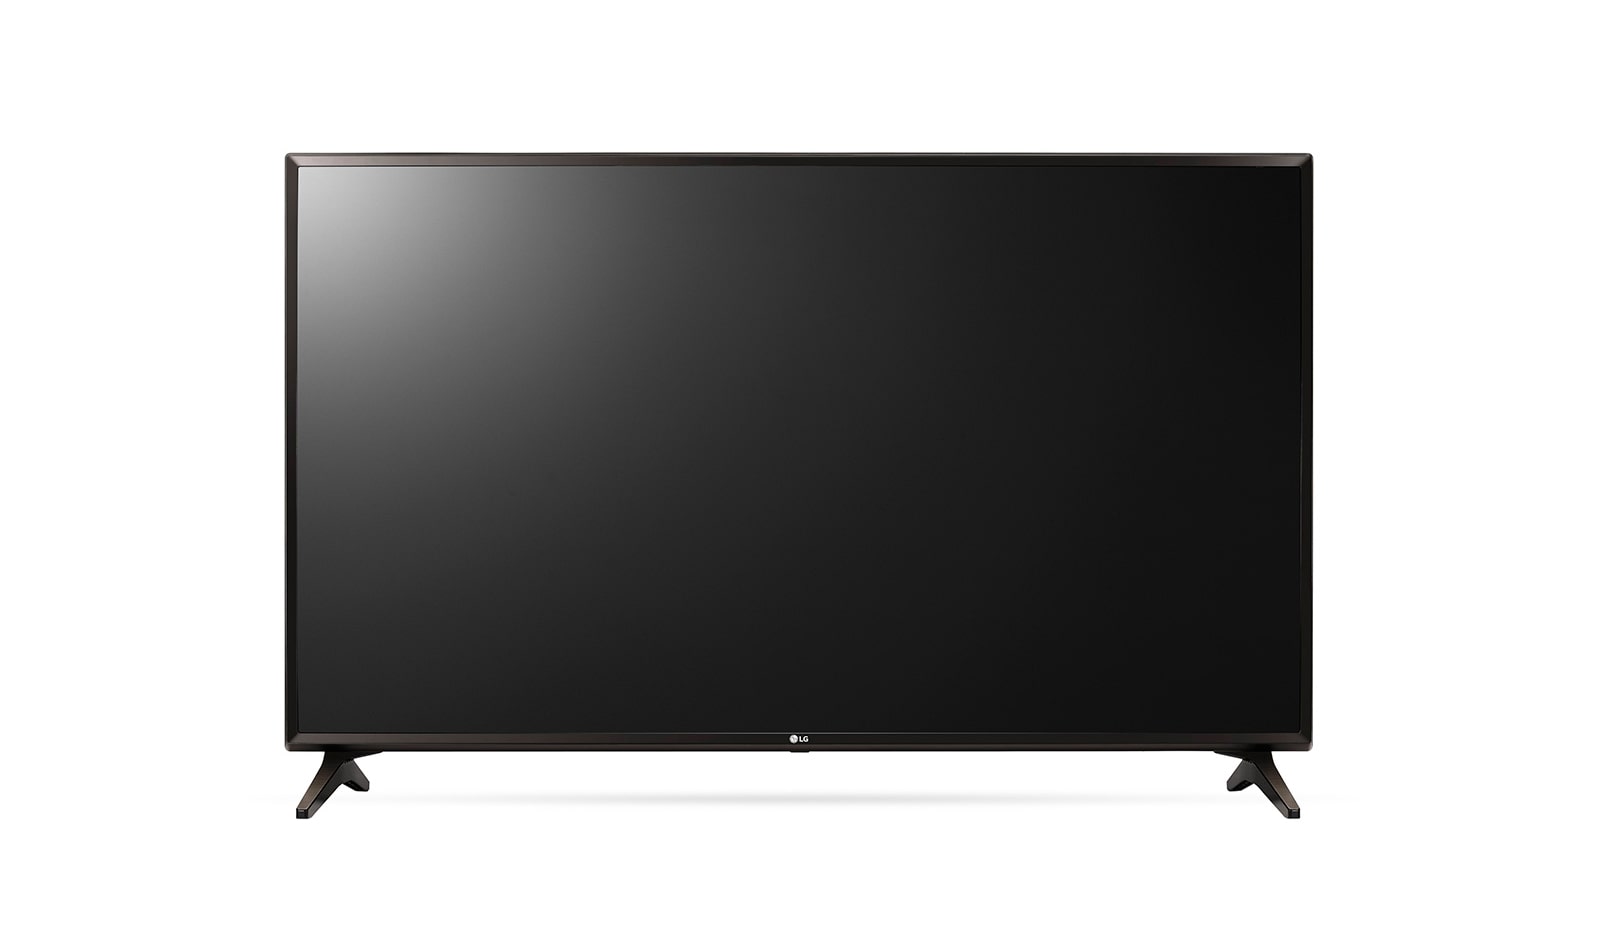 Smart TV LG 43 pulgadas - Canjeá tus Metros por lo que más te guste, Tenés  muchas opciones para elegir.